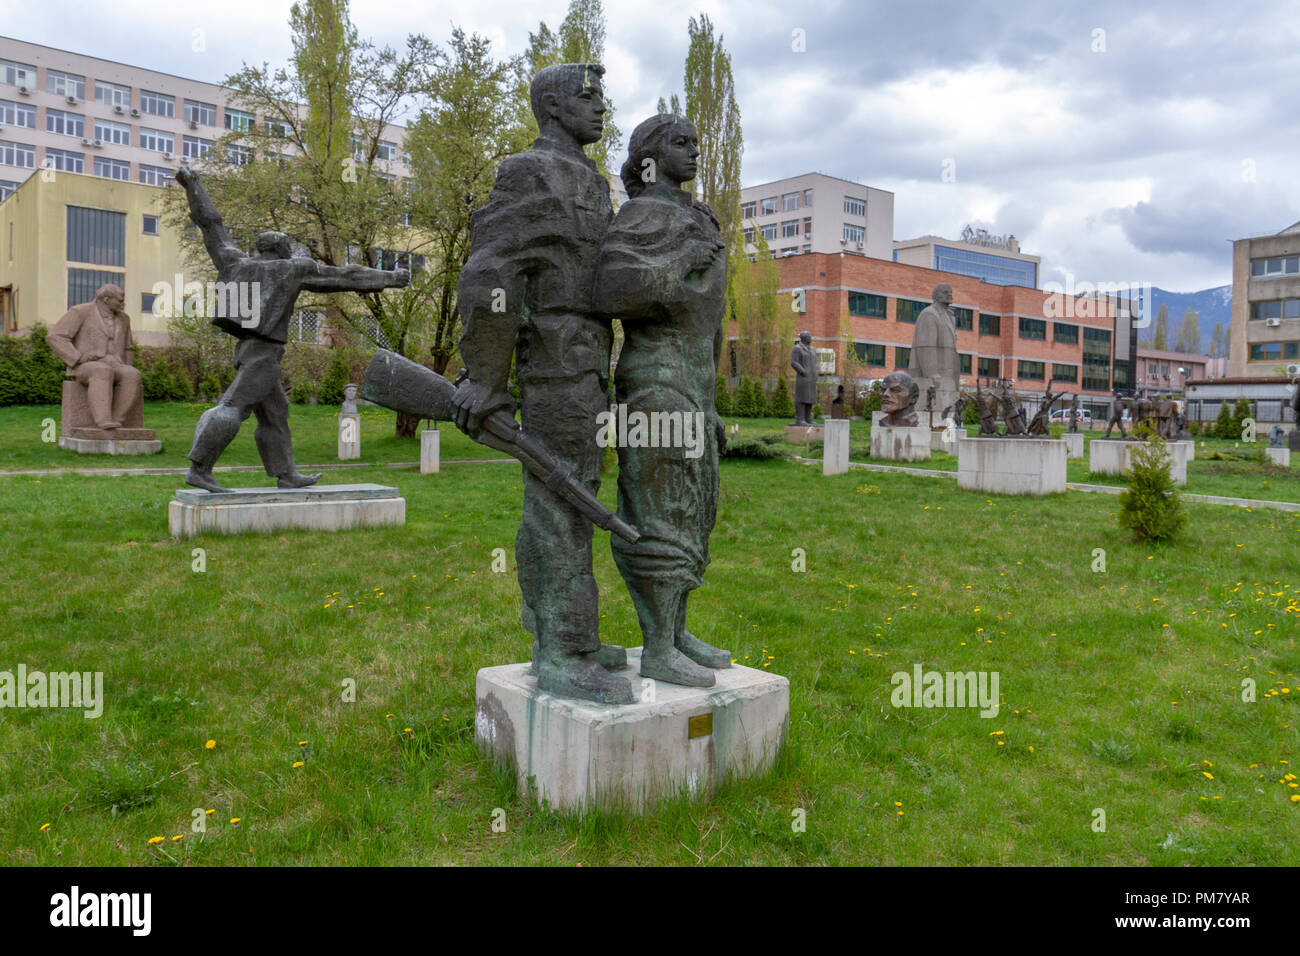 Allgemeine Ansicht des Museums der Sozialistischen Kunst outdoor Sculpture Garden Anzeige, Sofia, Bulgarien. Stockfoto